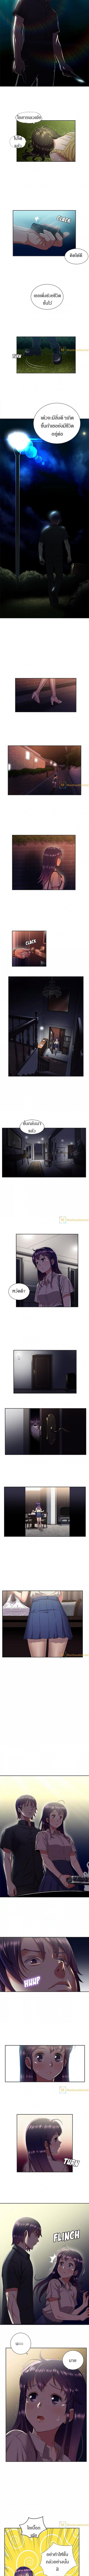 Yuri’s Part Time Job2